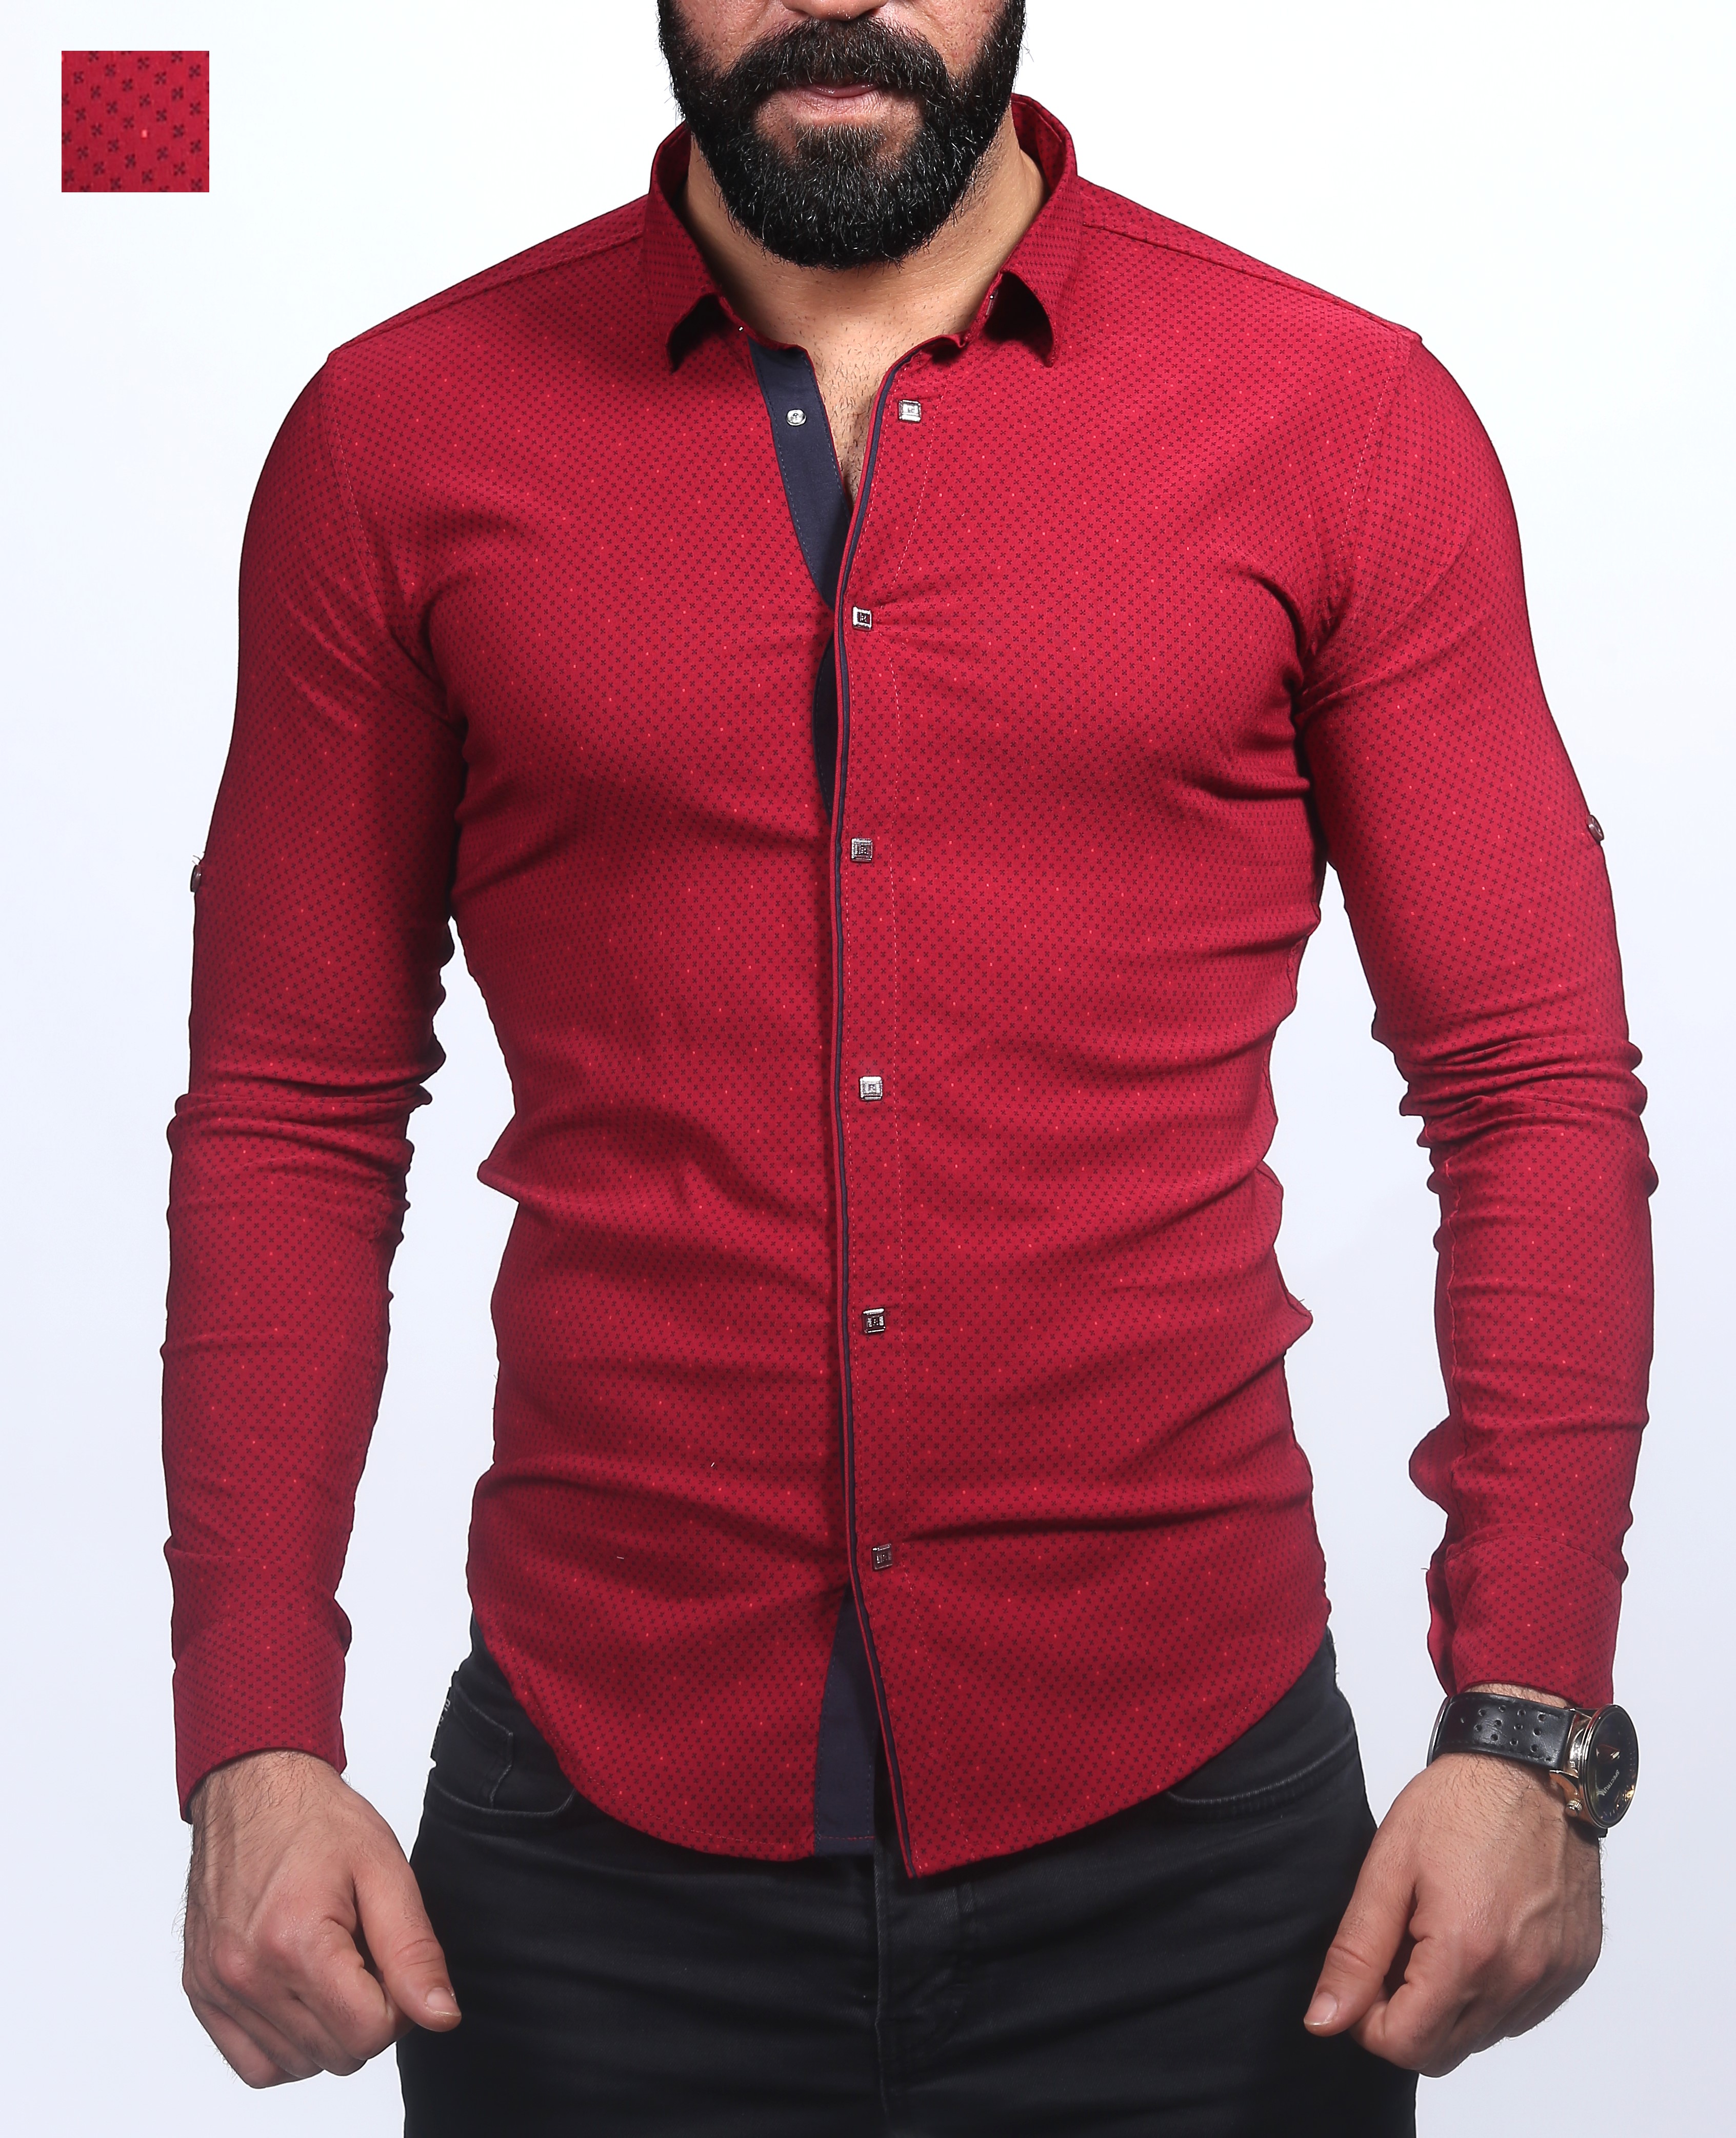 Турецкие мужской магазине. Турецкие рубашки мужские. Рубашка мужская красная. Мужчина в красной рубашке. Турецкие рубашки мужской одежды.